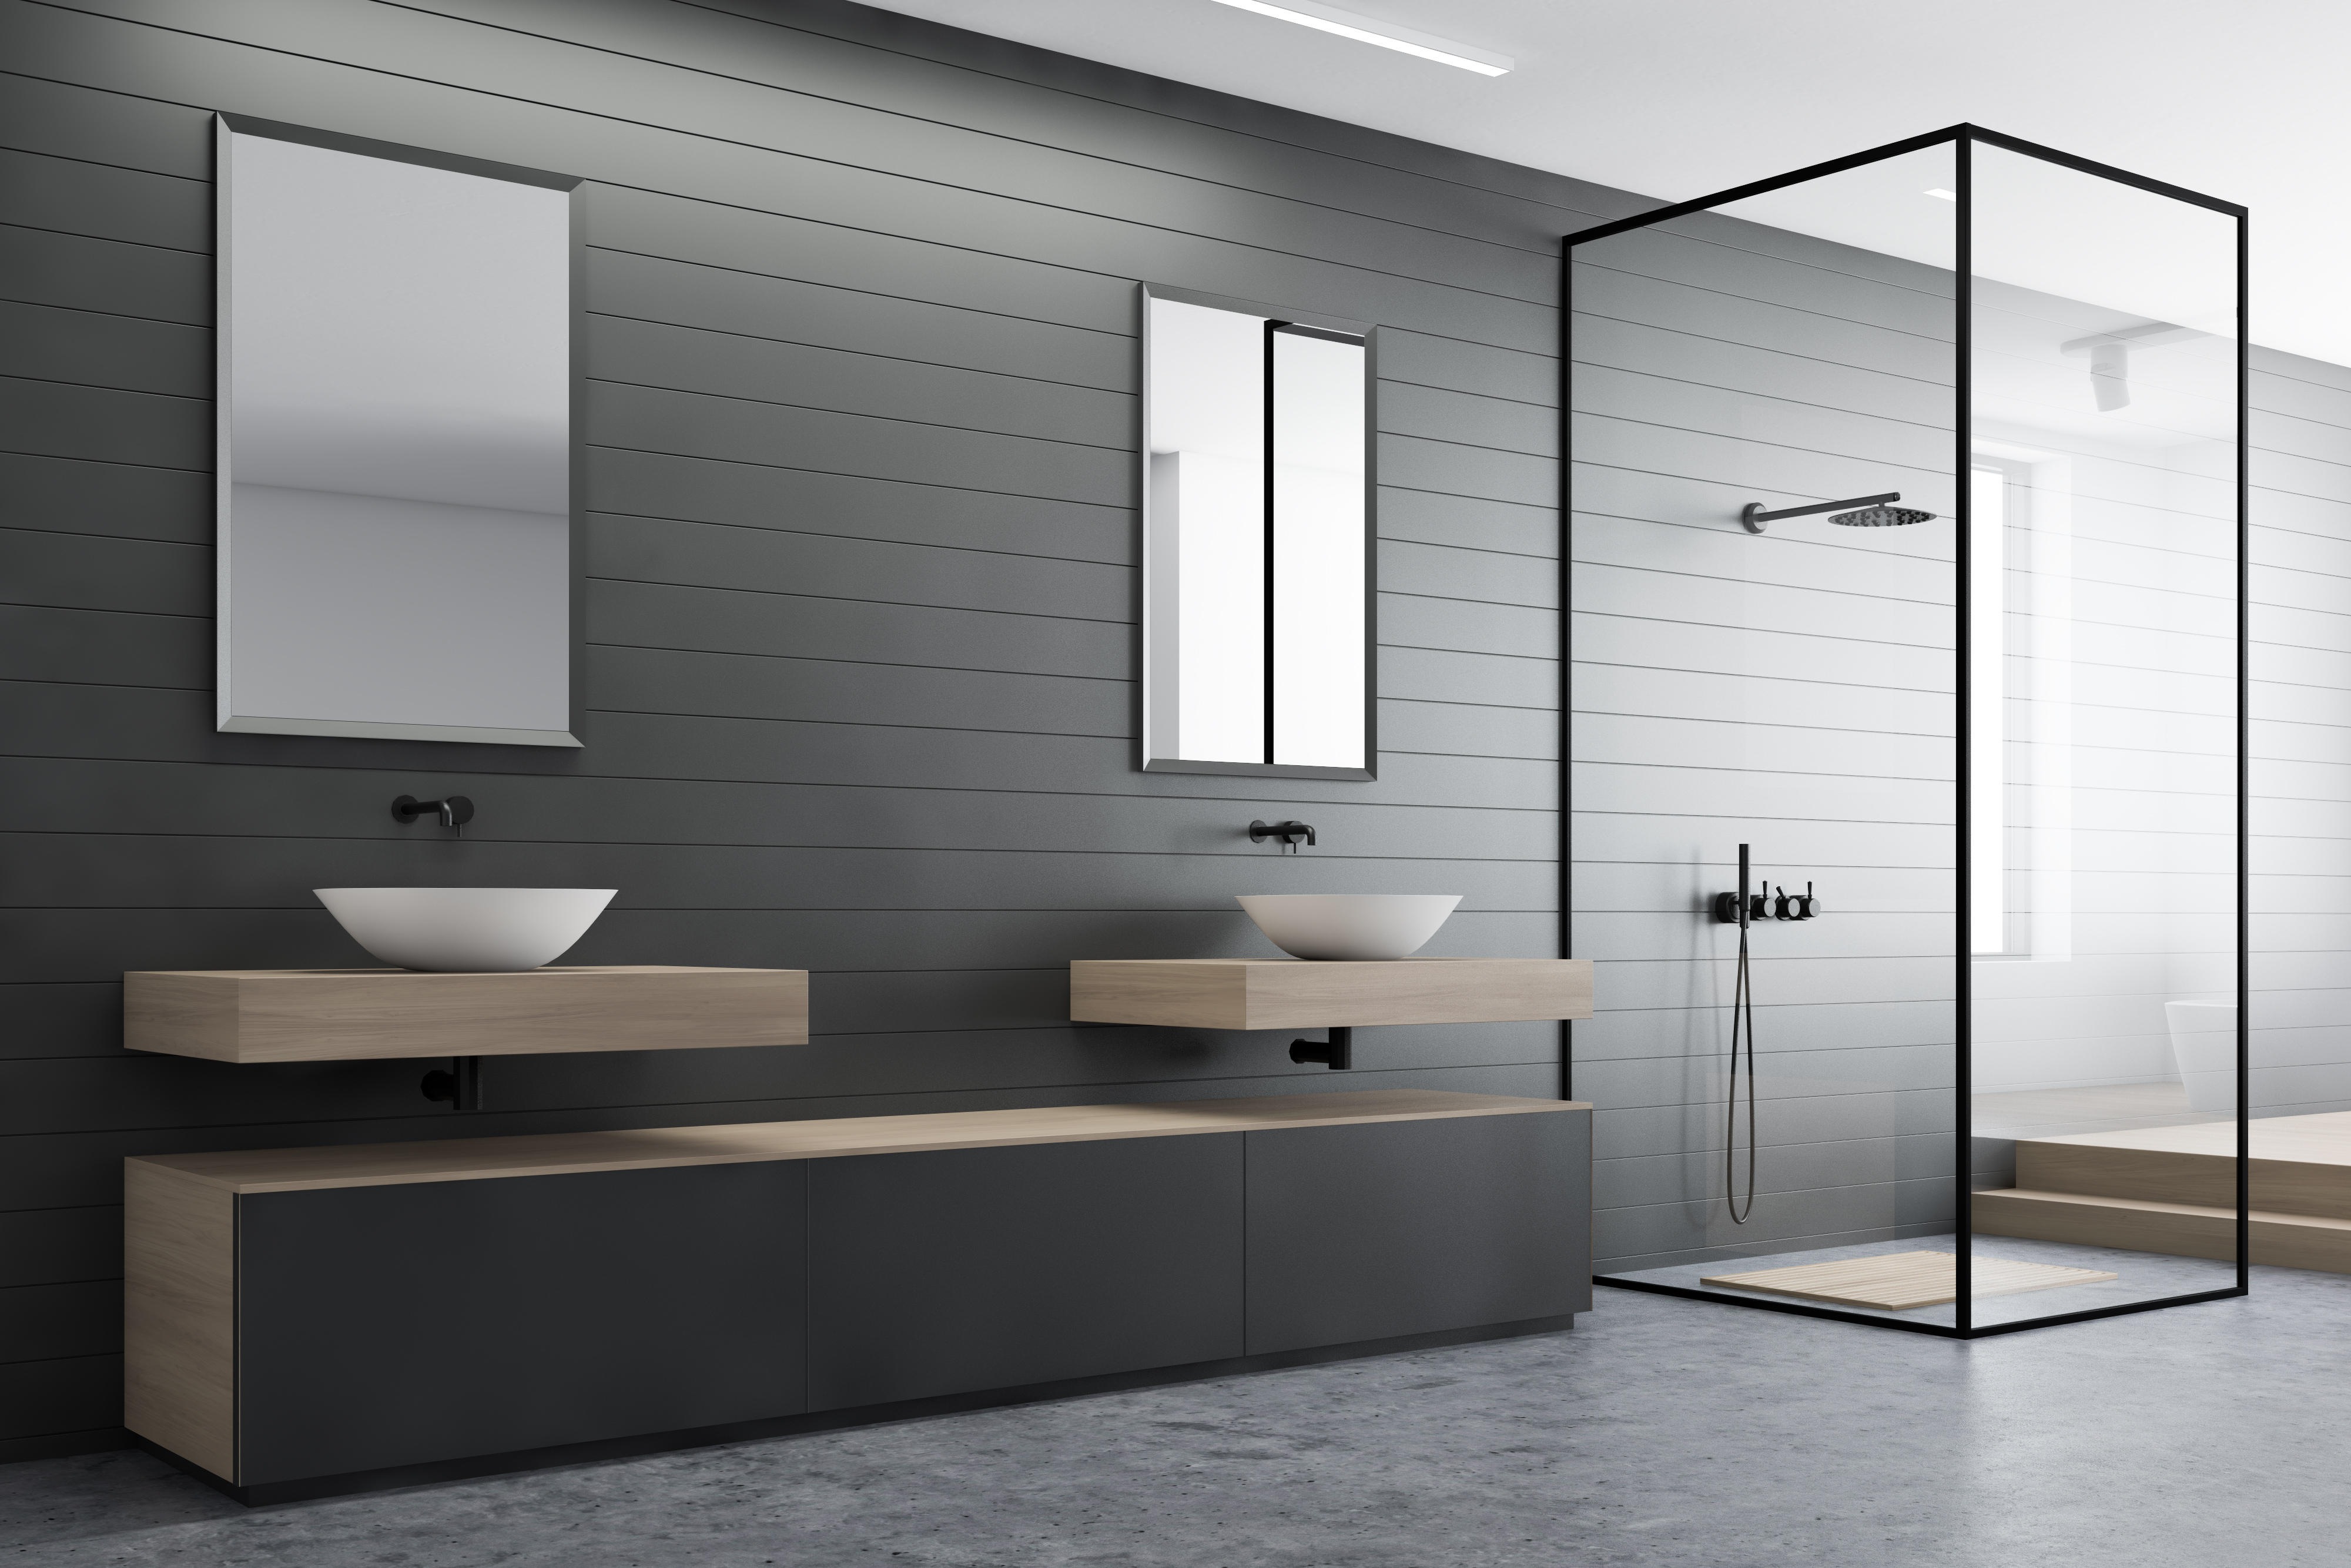 minimalismus im badezimmer – modern und funktionell - bano24 blog